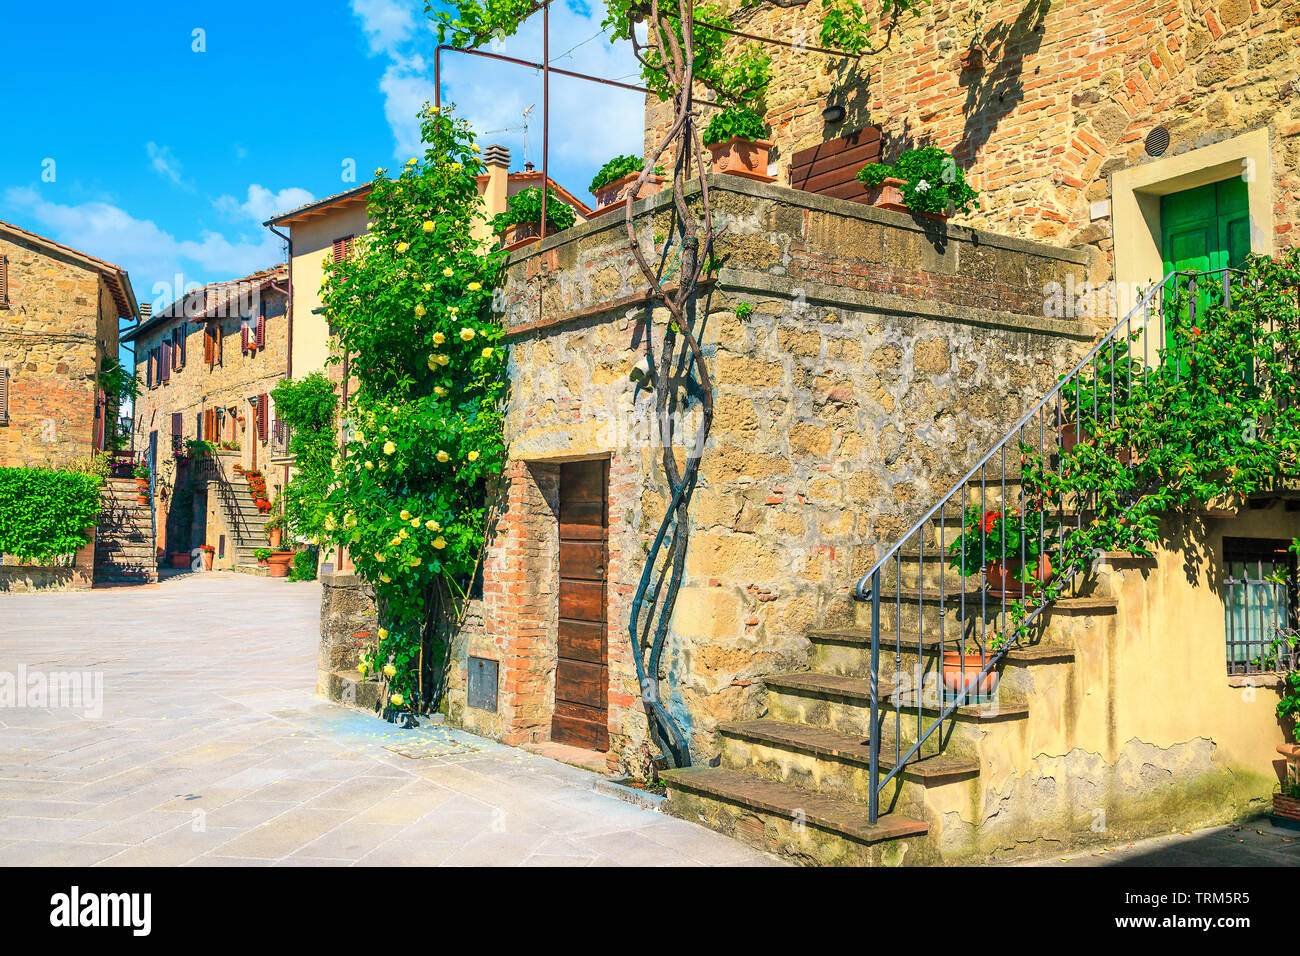 Le tourisme populaire et de déplacement, promenade incroyable avec des vieilles maisons en pierre, des entrées d'ornement de fleurs et de roses colorées, Montic Banque D'Images